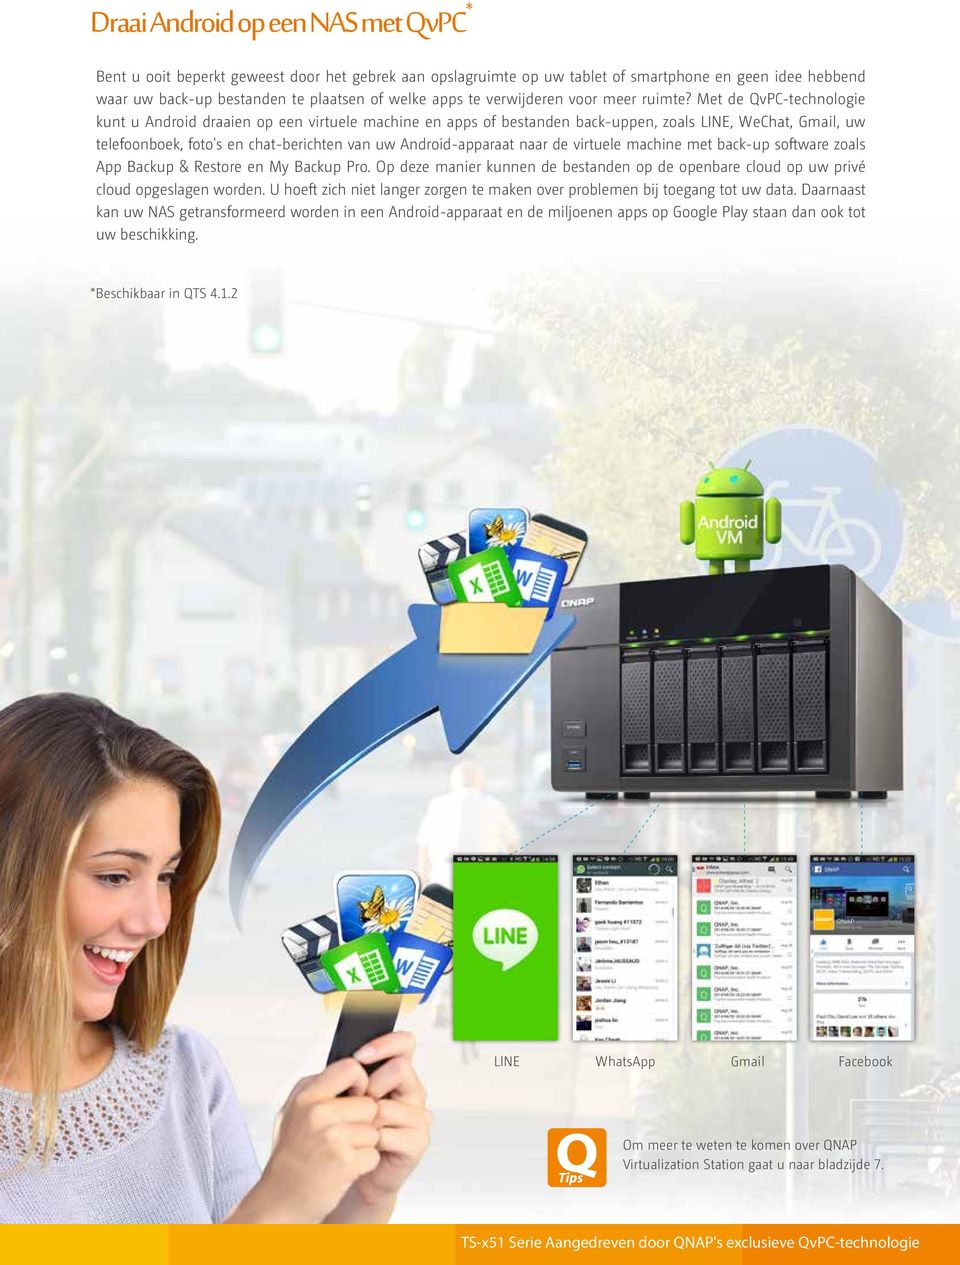 Met de QvPC-technologie kunt u Android draaien op een virtuele machine en apps of bestanden back-uppen, zoals LINE, WeChat, Gmail, uw telefoonboek, foto's en chat-berichten van uw Android-apparaat